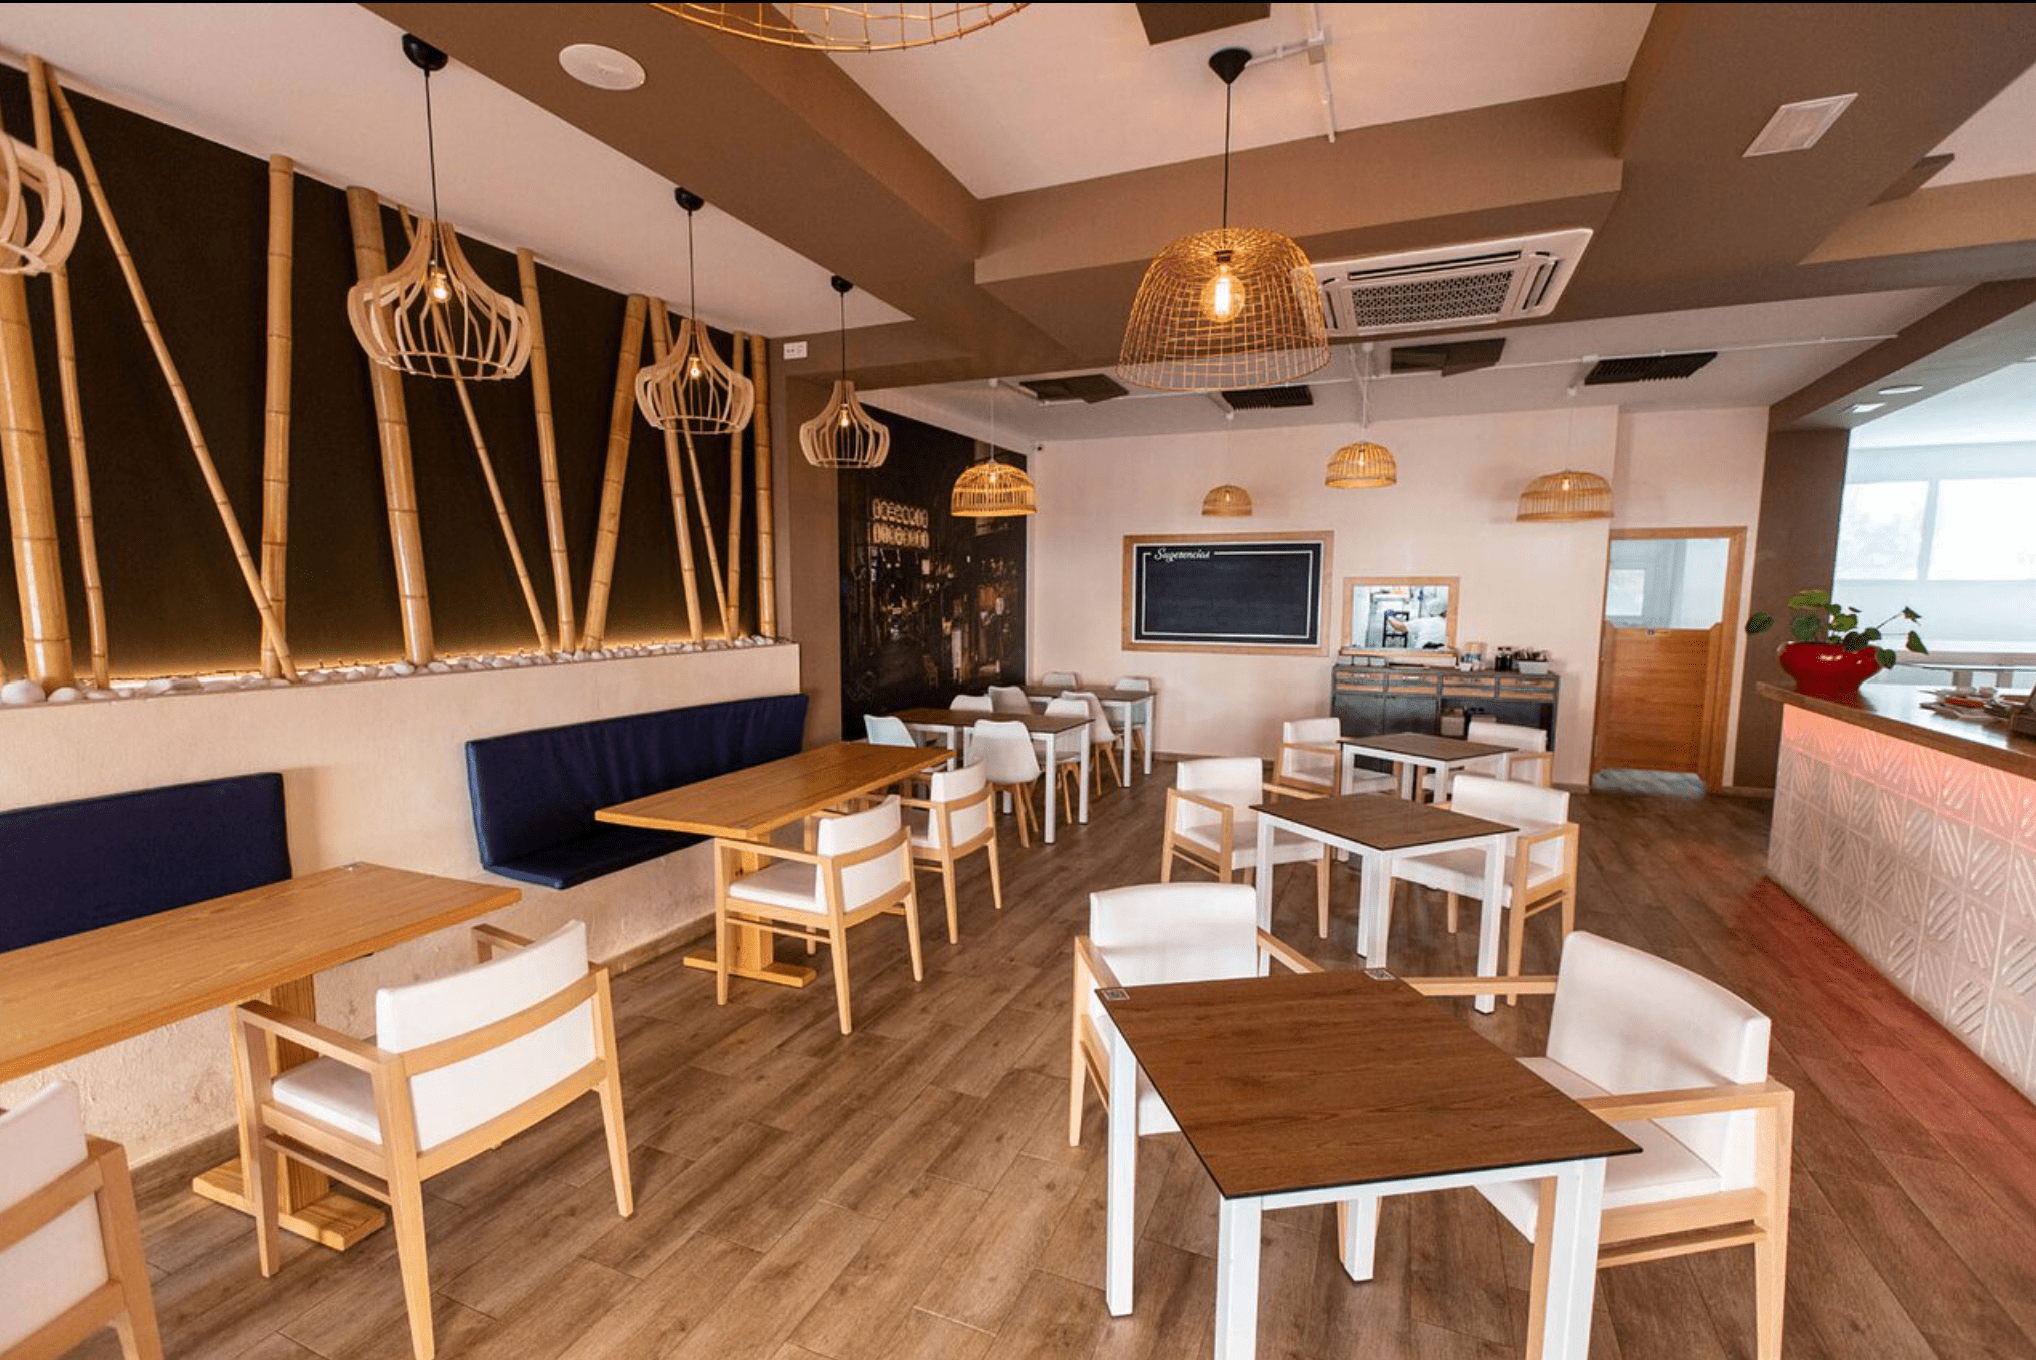 ASAKO Mobiliario terraza-restaurante instalado por INOU